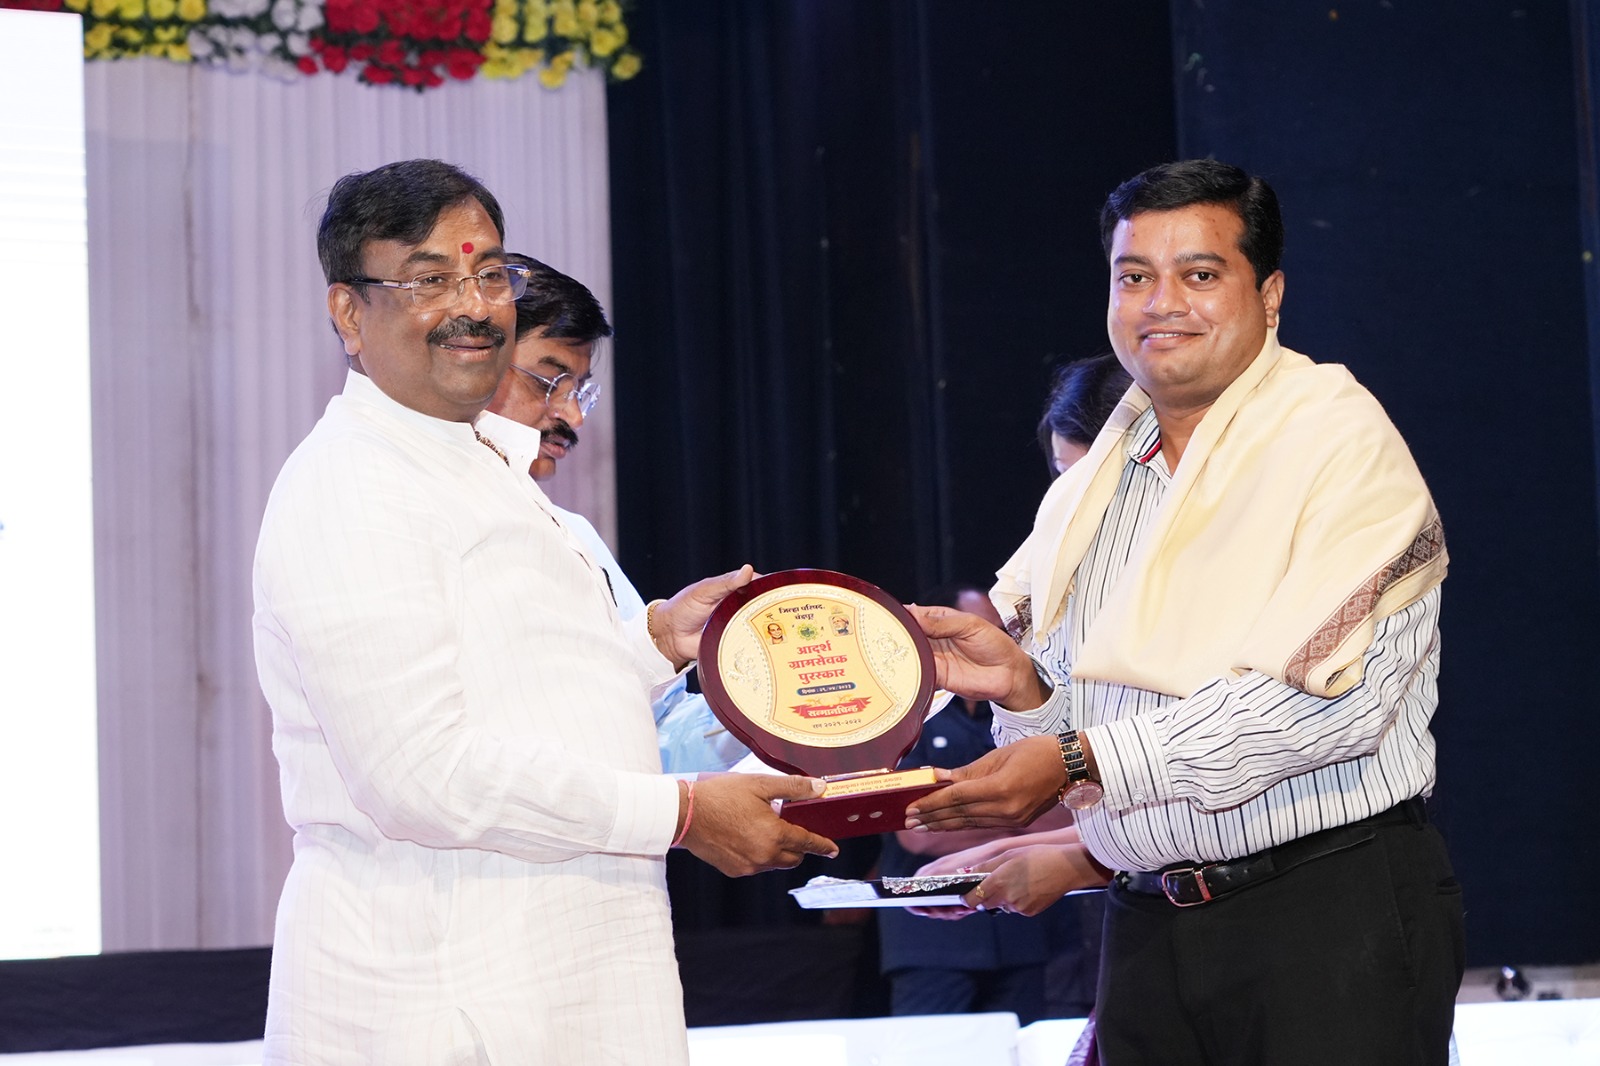 नारंडा चे ग्रामसेवक महेश कुमार जगताप आदर्श ग्रामसेवक पुरस्काराने सन्मानीत